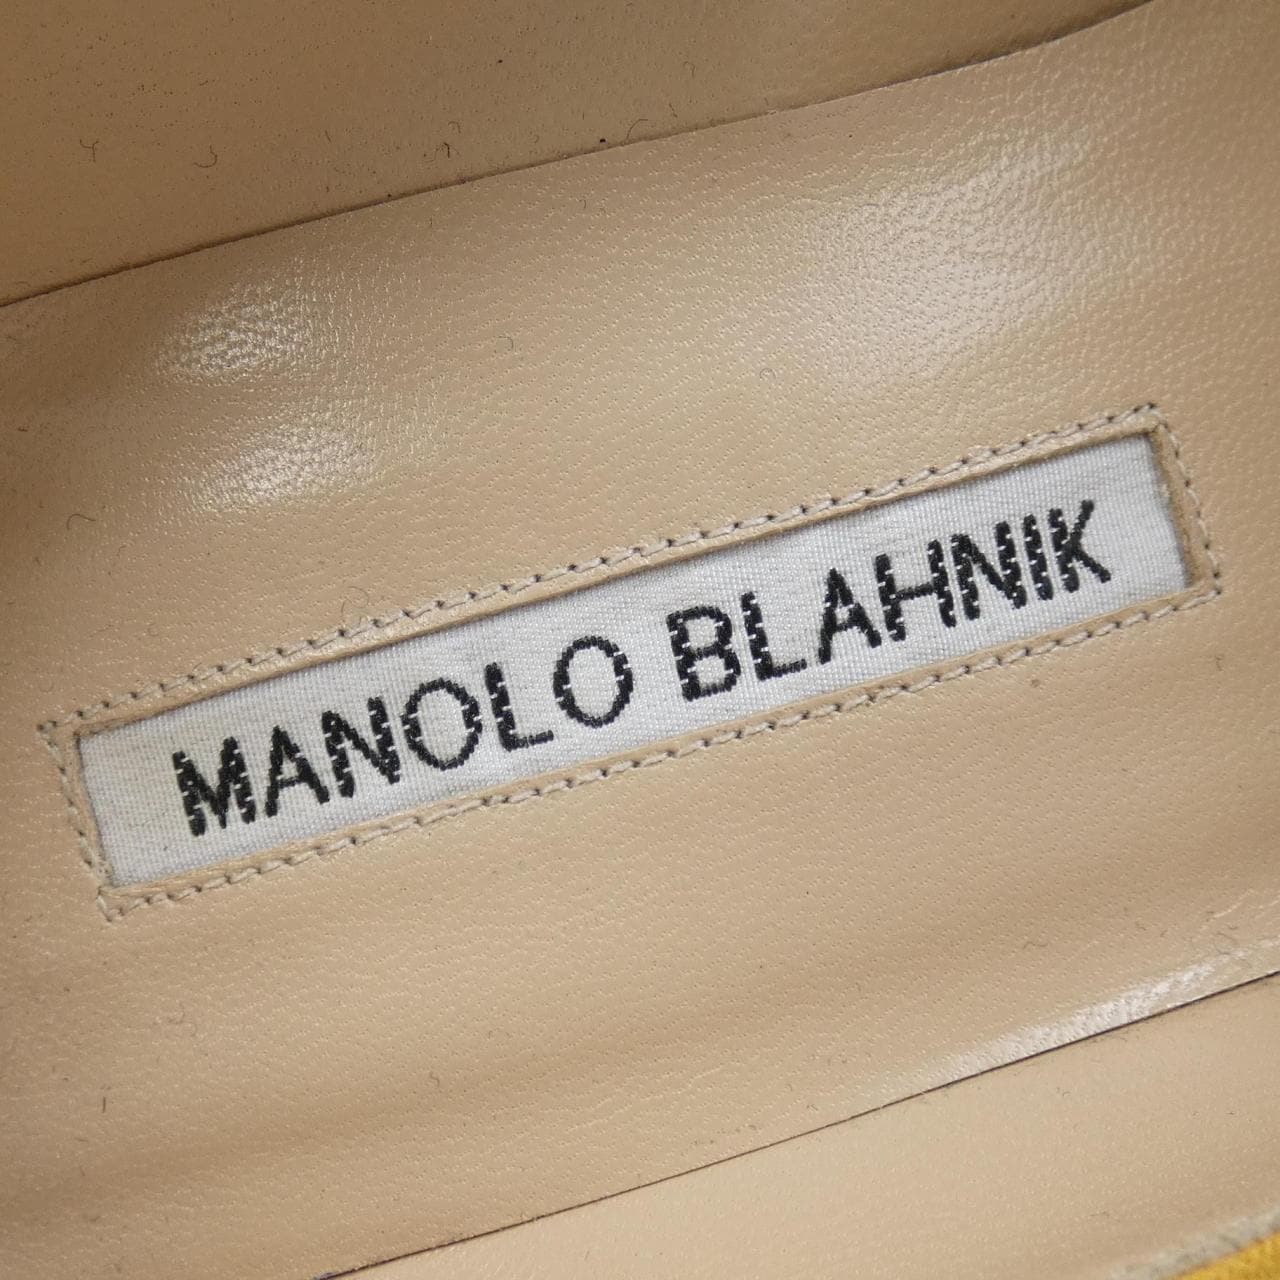 マノロブラニク MANOLO BLAHNIK パンプス